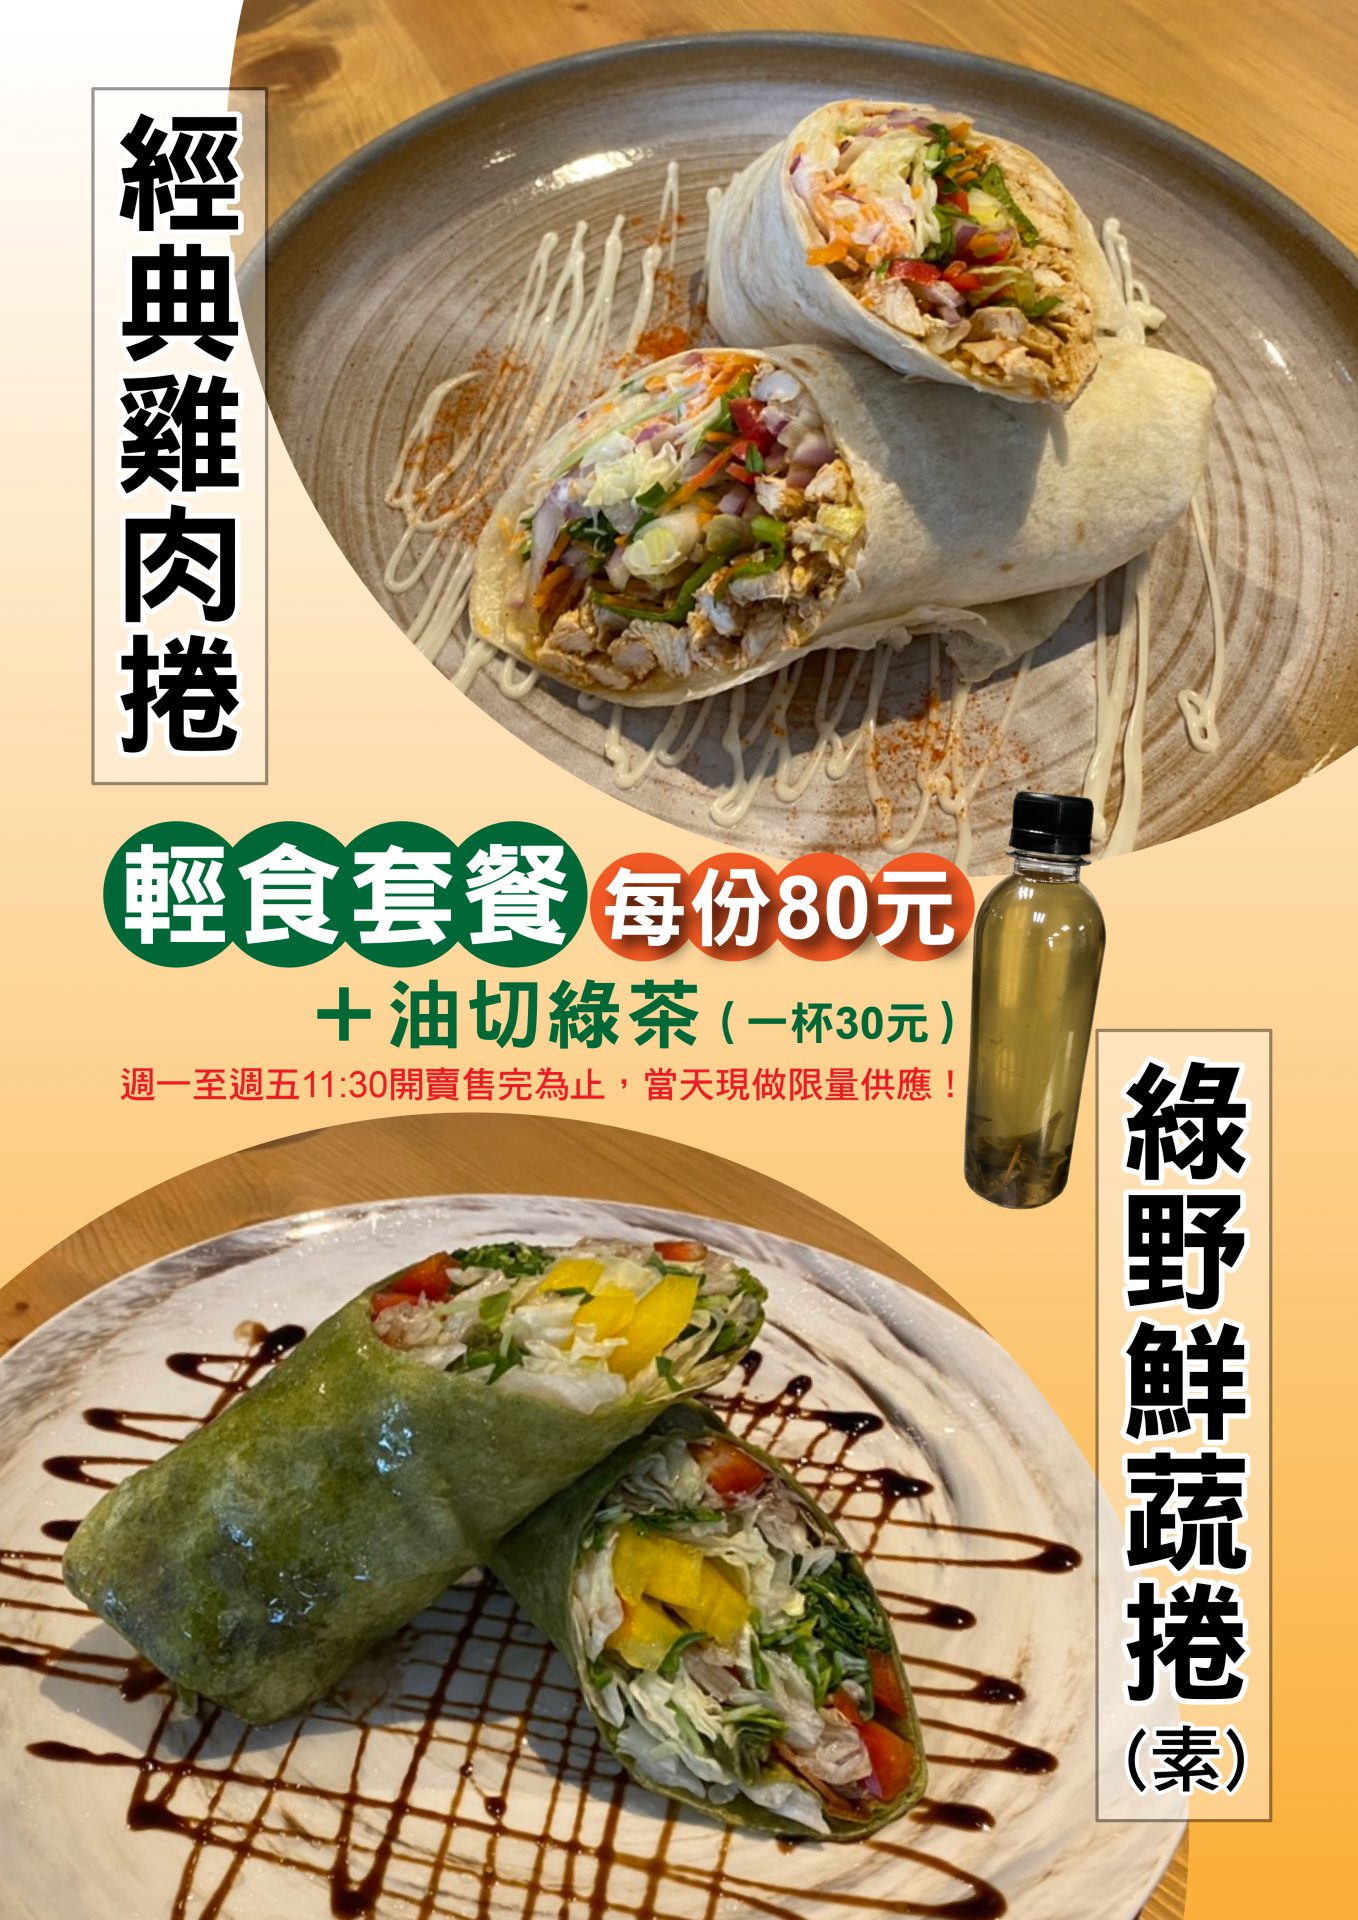 松山館/南港館「80元輕食套餐附飲料」 替你補充一天蔬菜量！